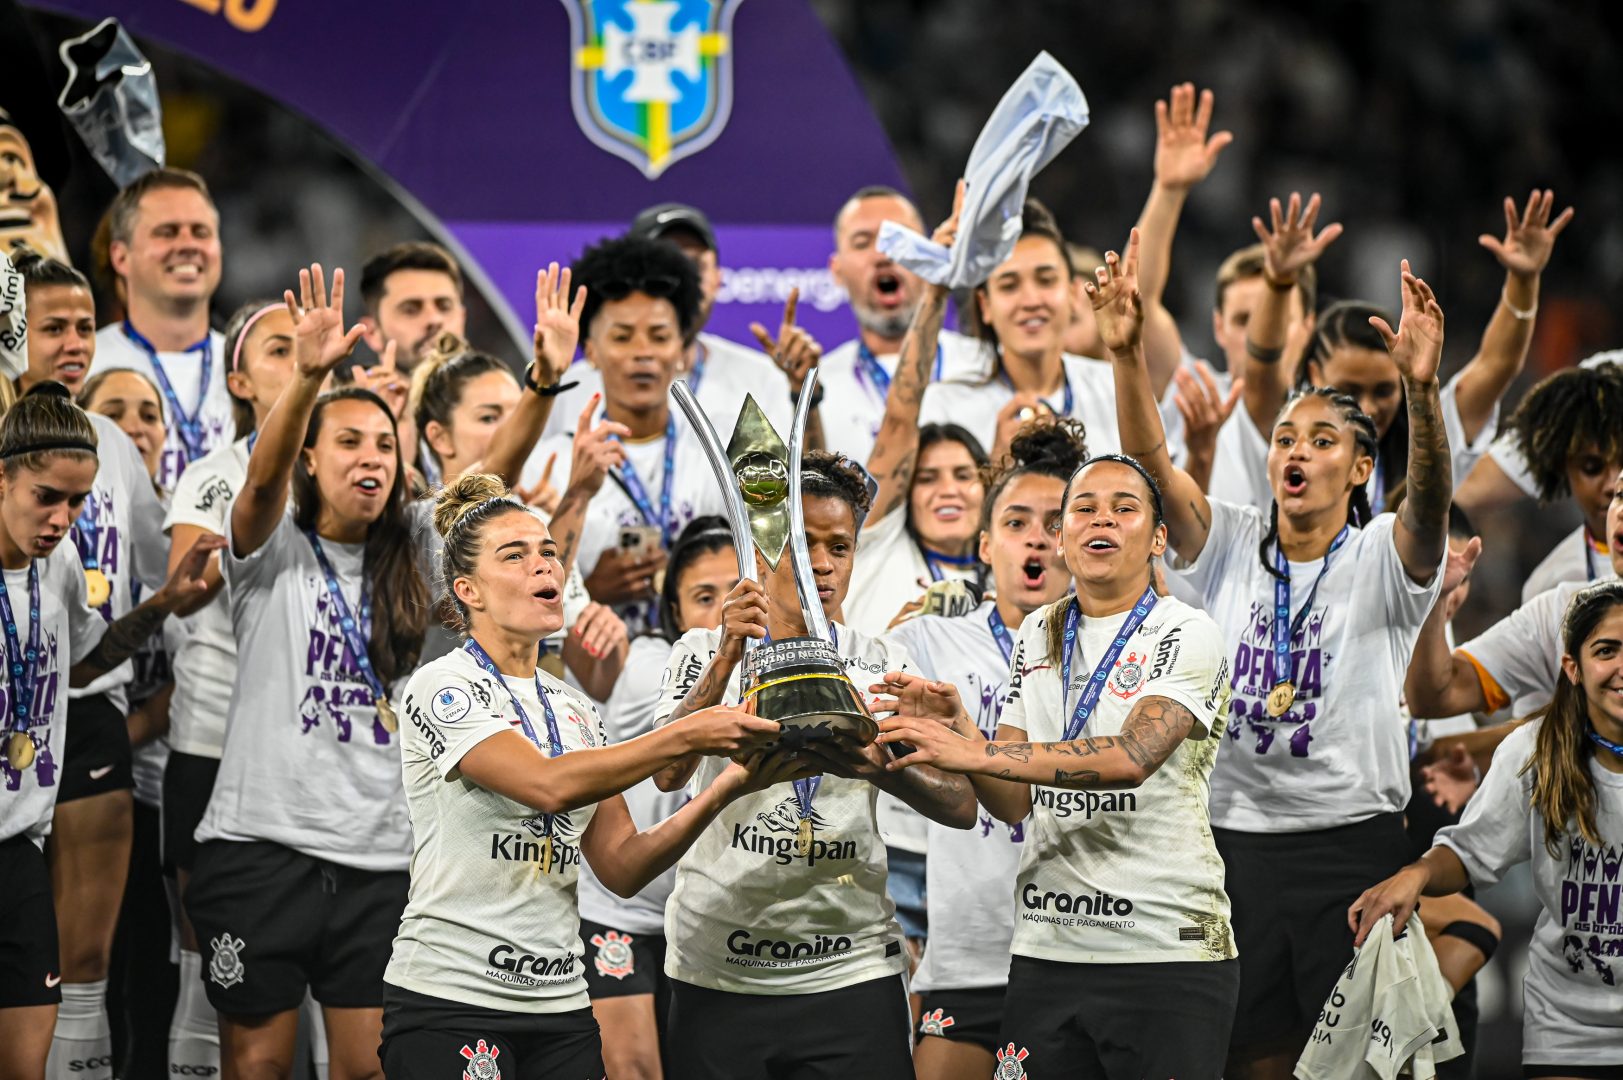 Corinthians goleia São Paulo e conquista o Paulistão Feminino